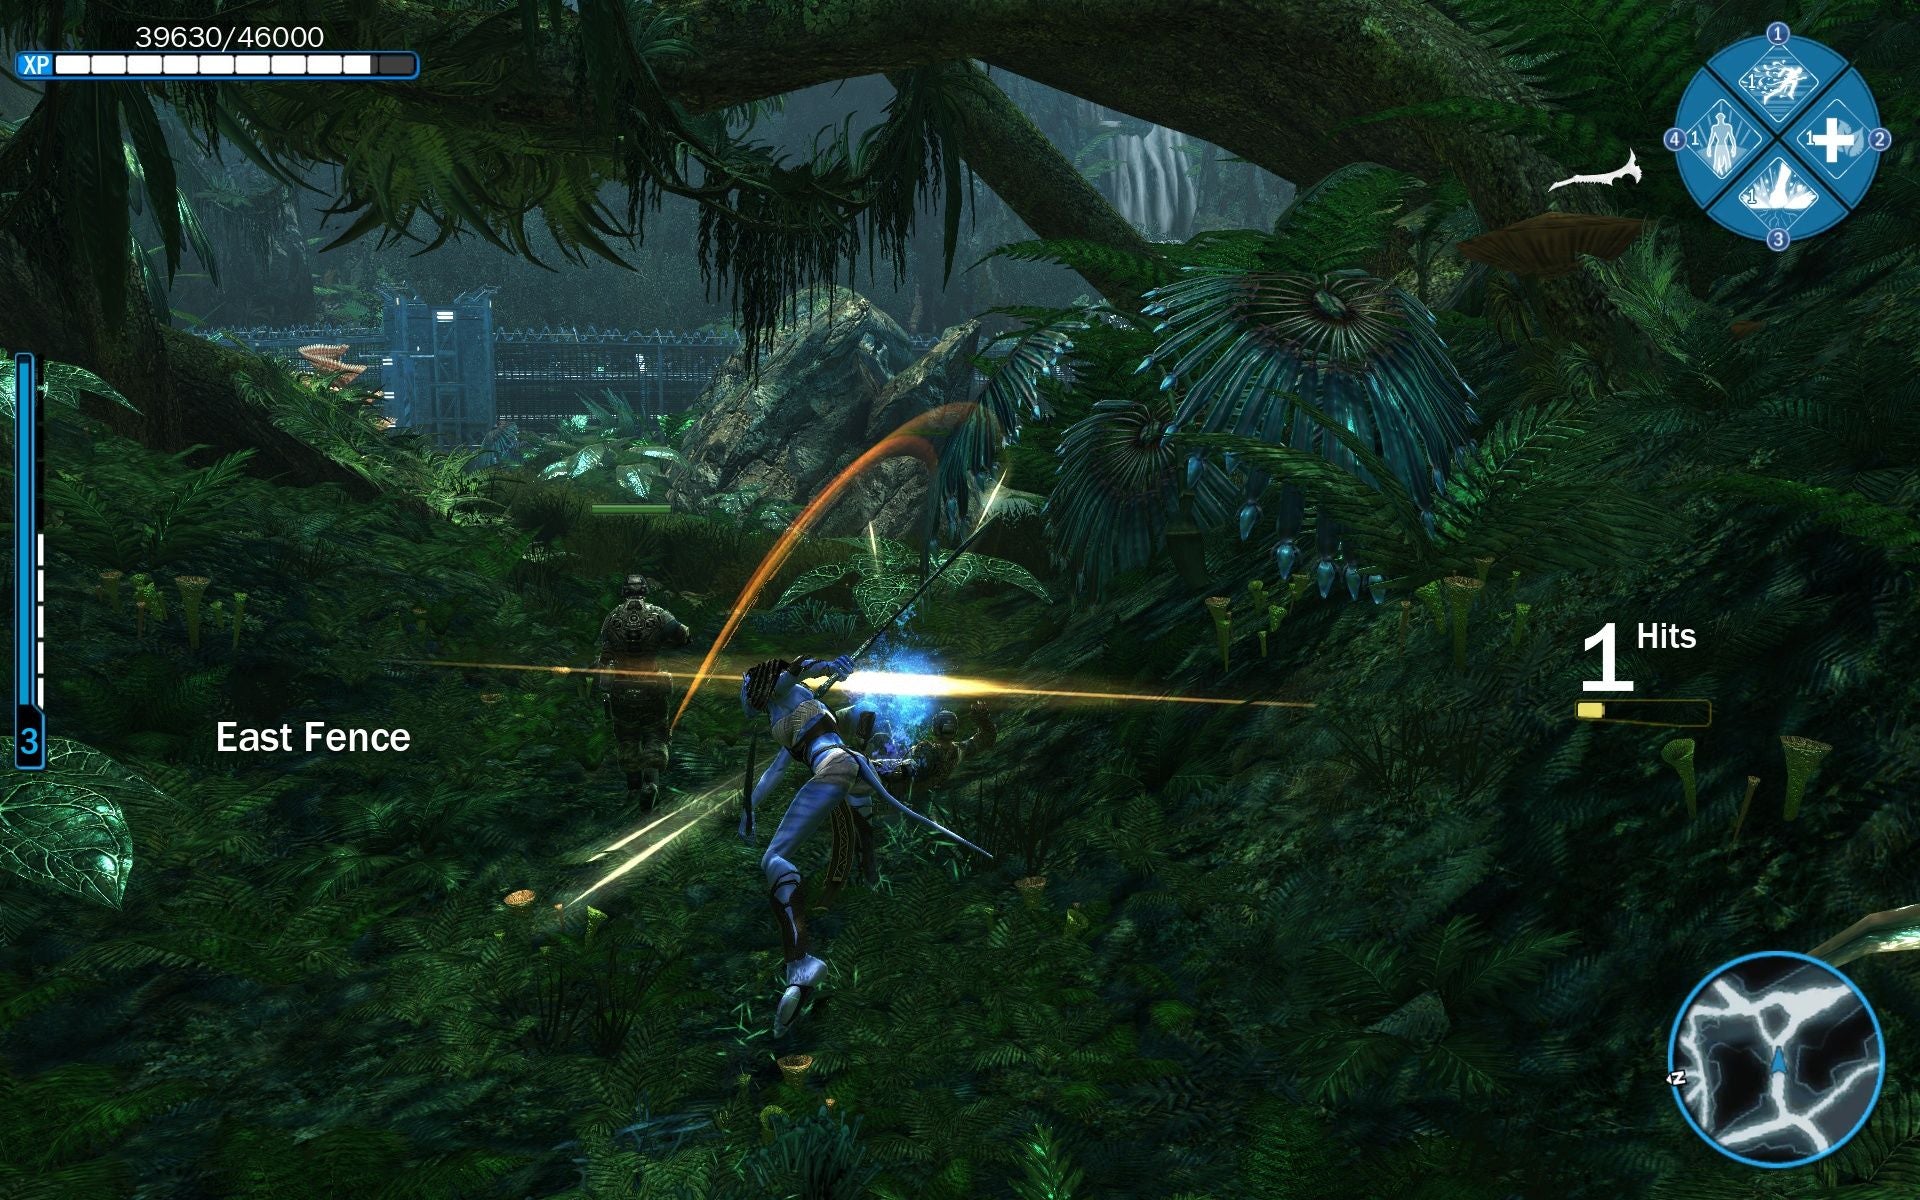 Màn hình tải trò chơi James Cameron\'s Avatar sẽ khiến bạn cảm thấy hồi hộp khi chờ đợi trò chơi sẵn sàng chơi thôi! Đừng bỏ lỡ phần nào của cuộc phiêu lưu tuyệt vời tại Pandora nhé!